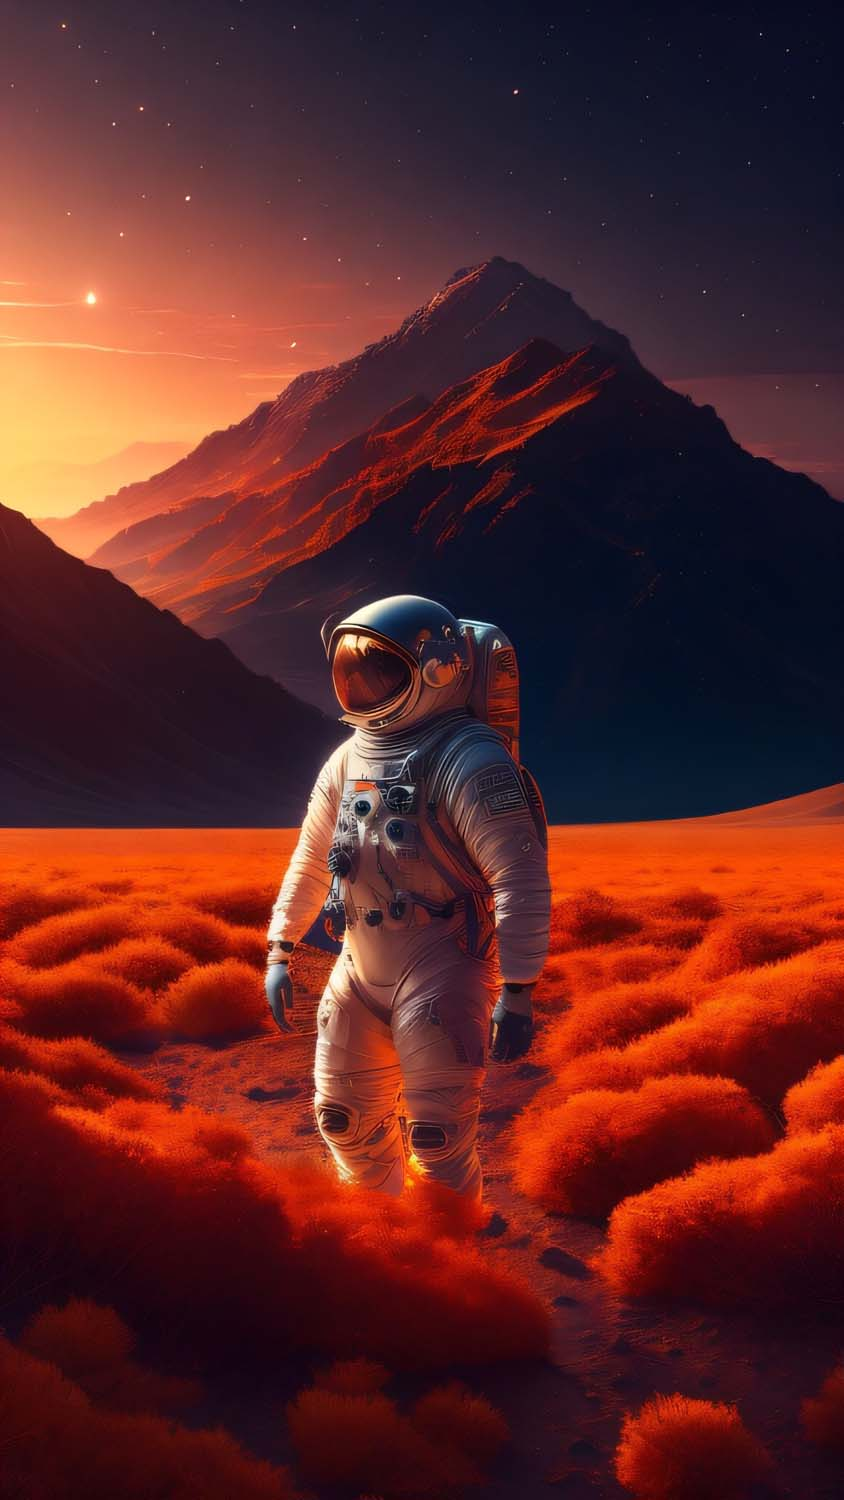 On The Mars